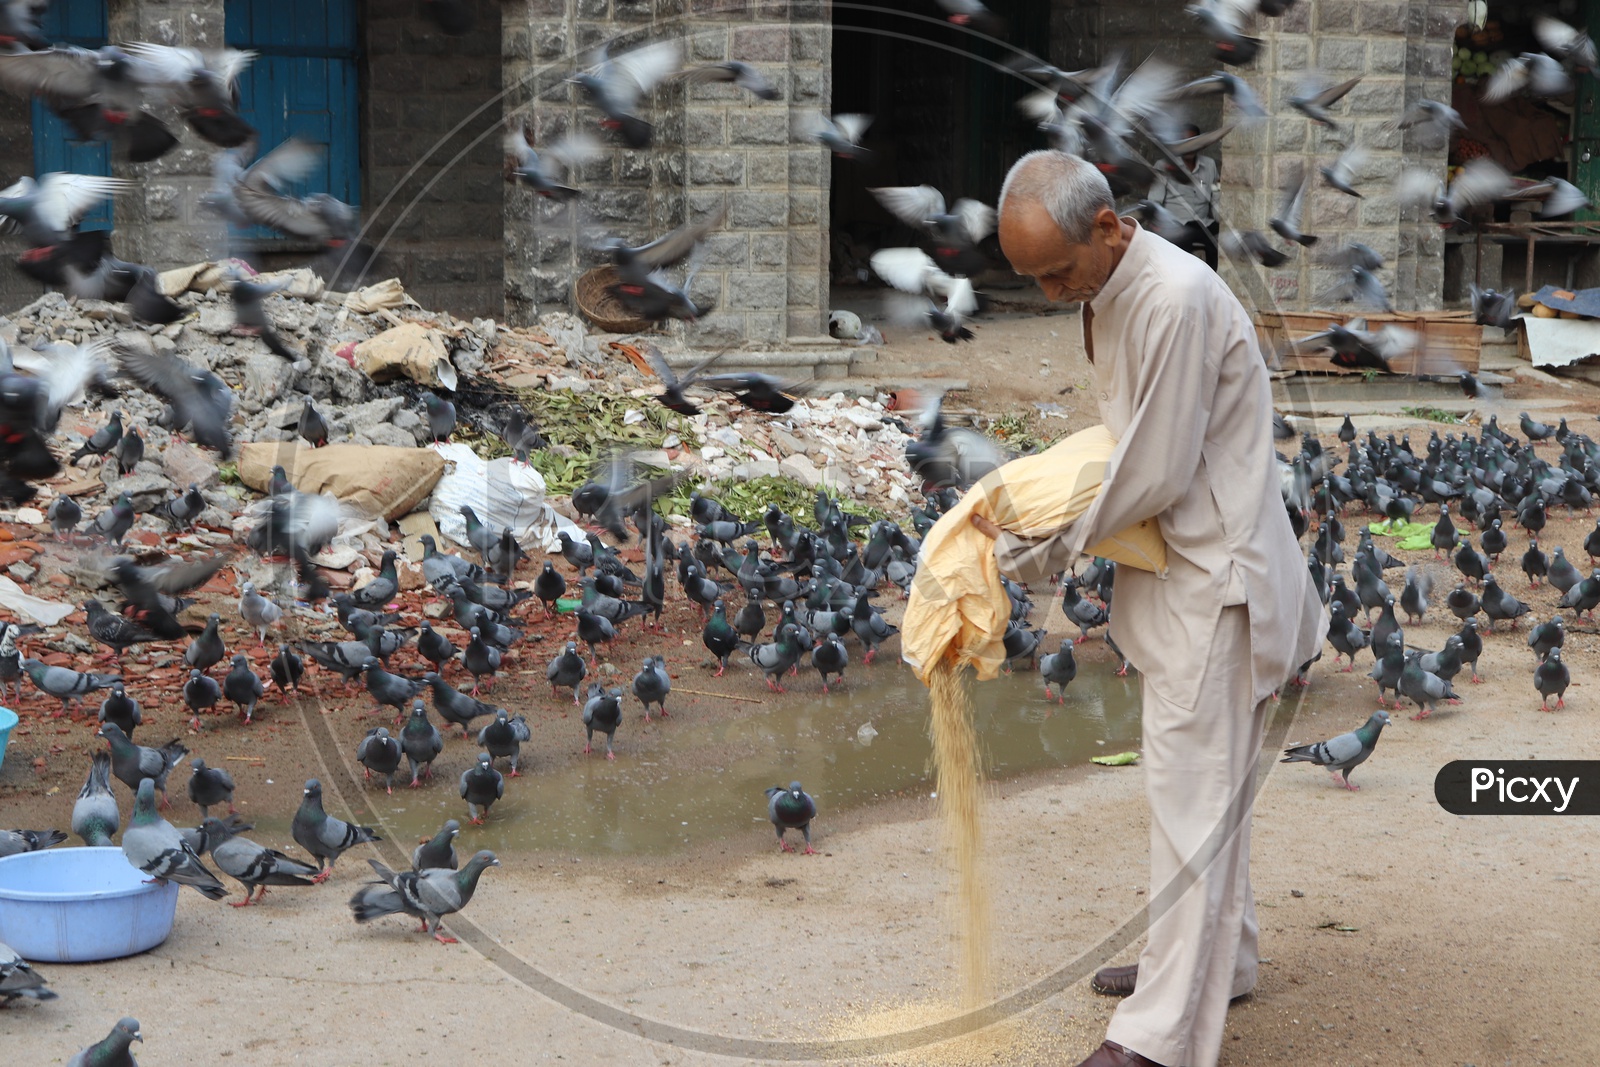 An Old Man Feeding Pigeons At Mozamjahi Market